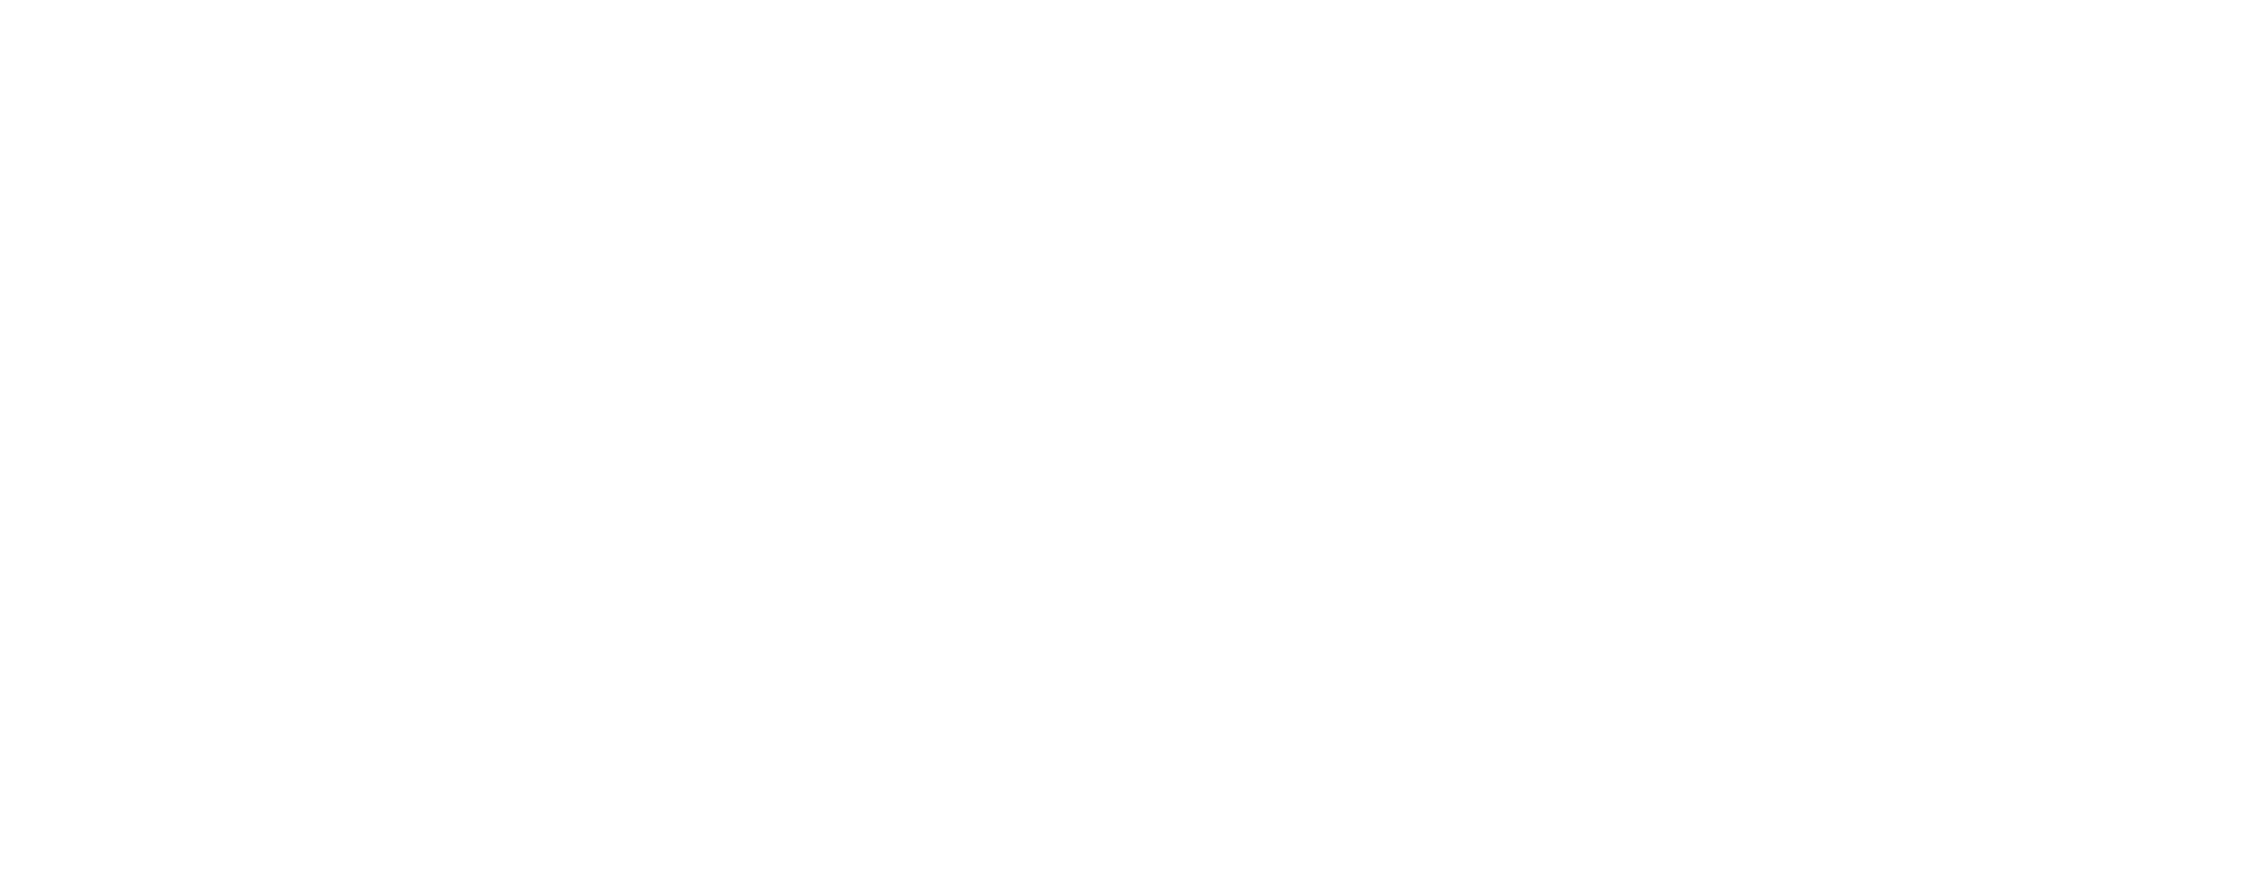 Bojangles Logo - Home - Sunshine State Bojangles